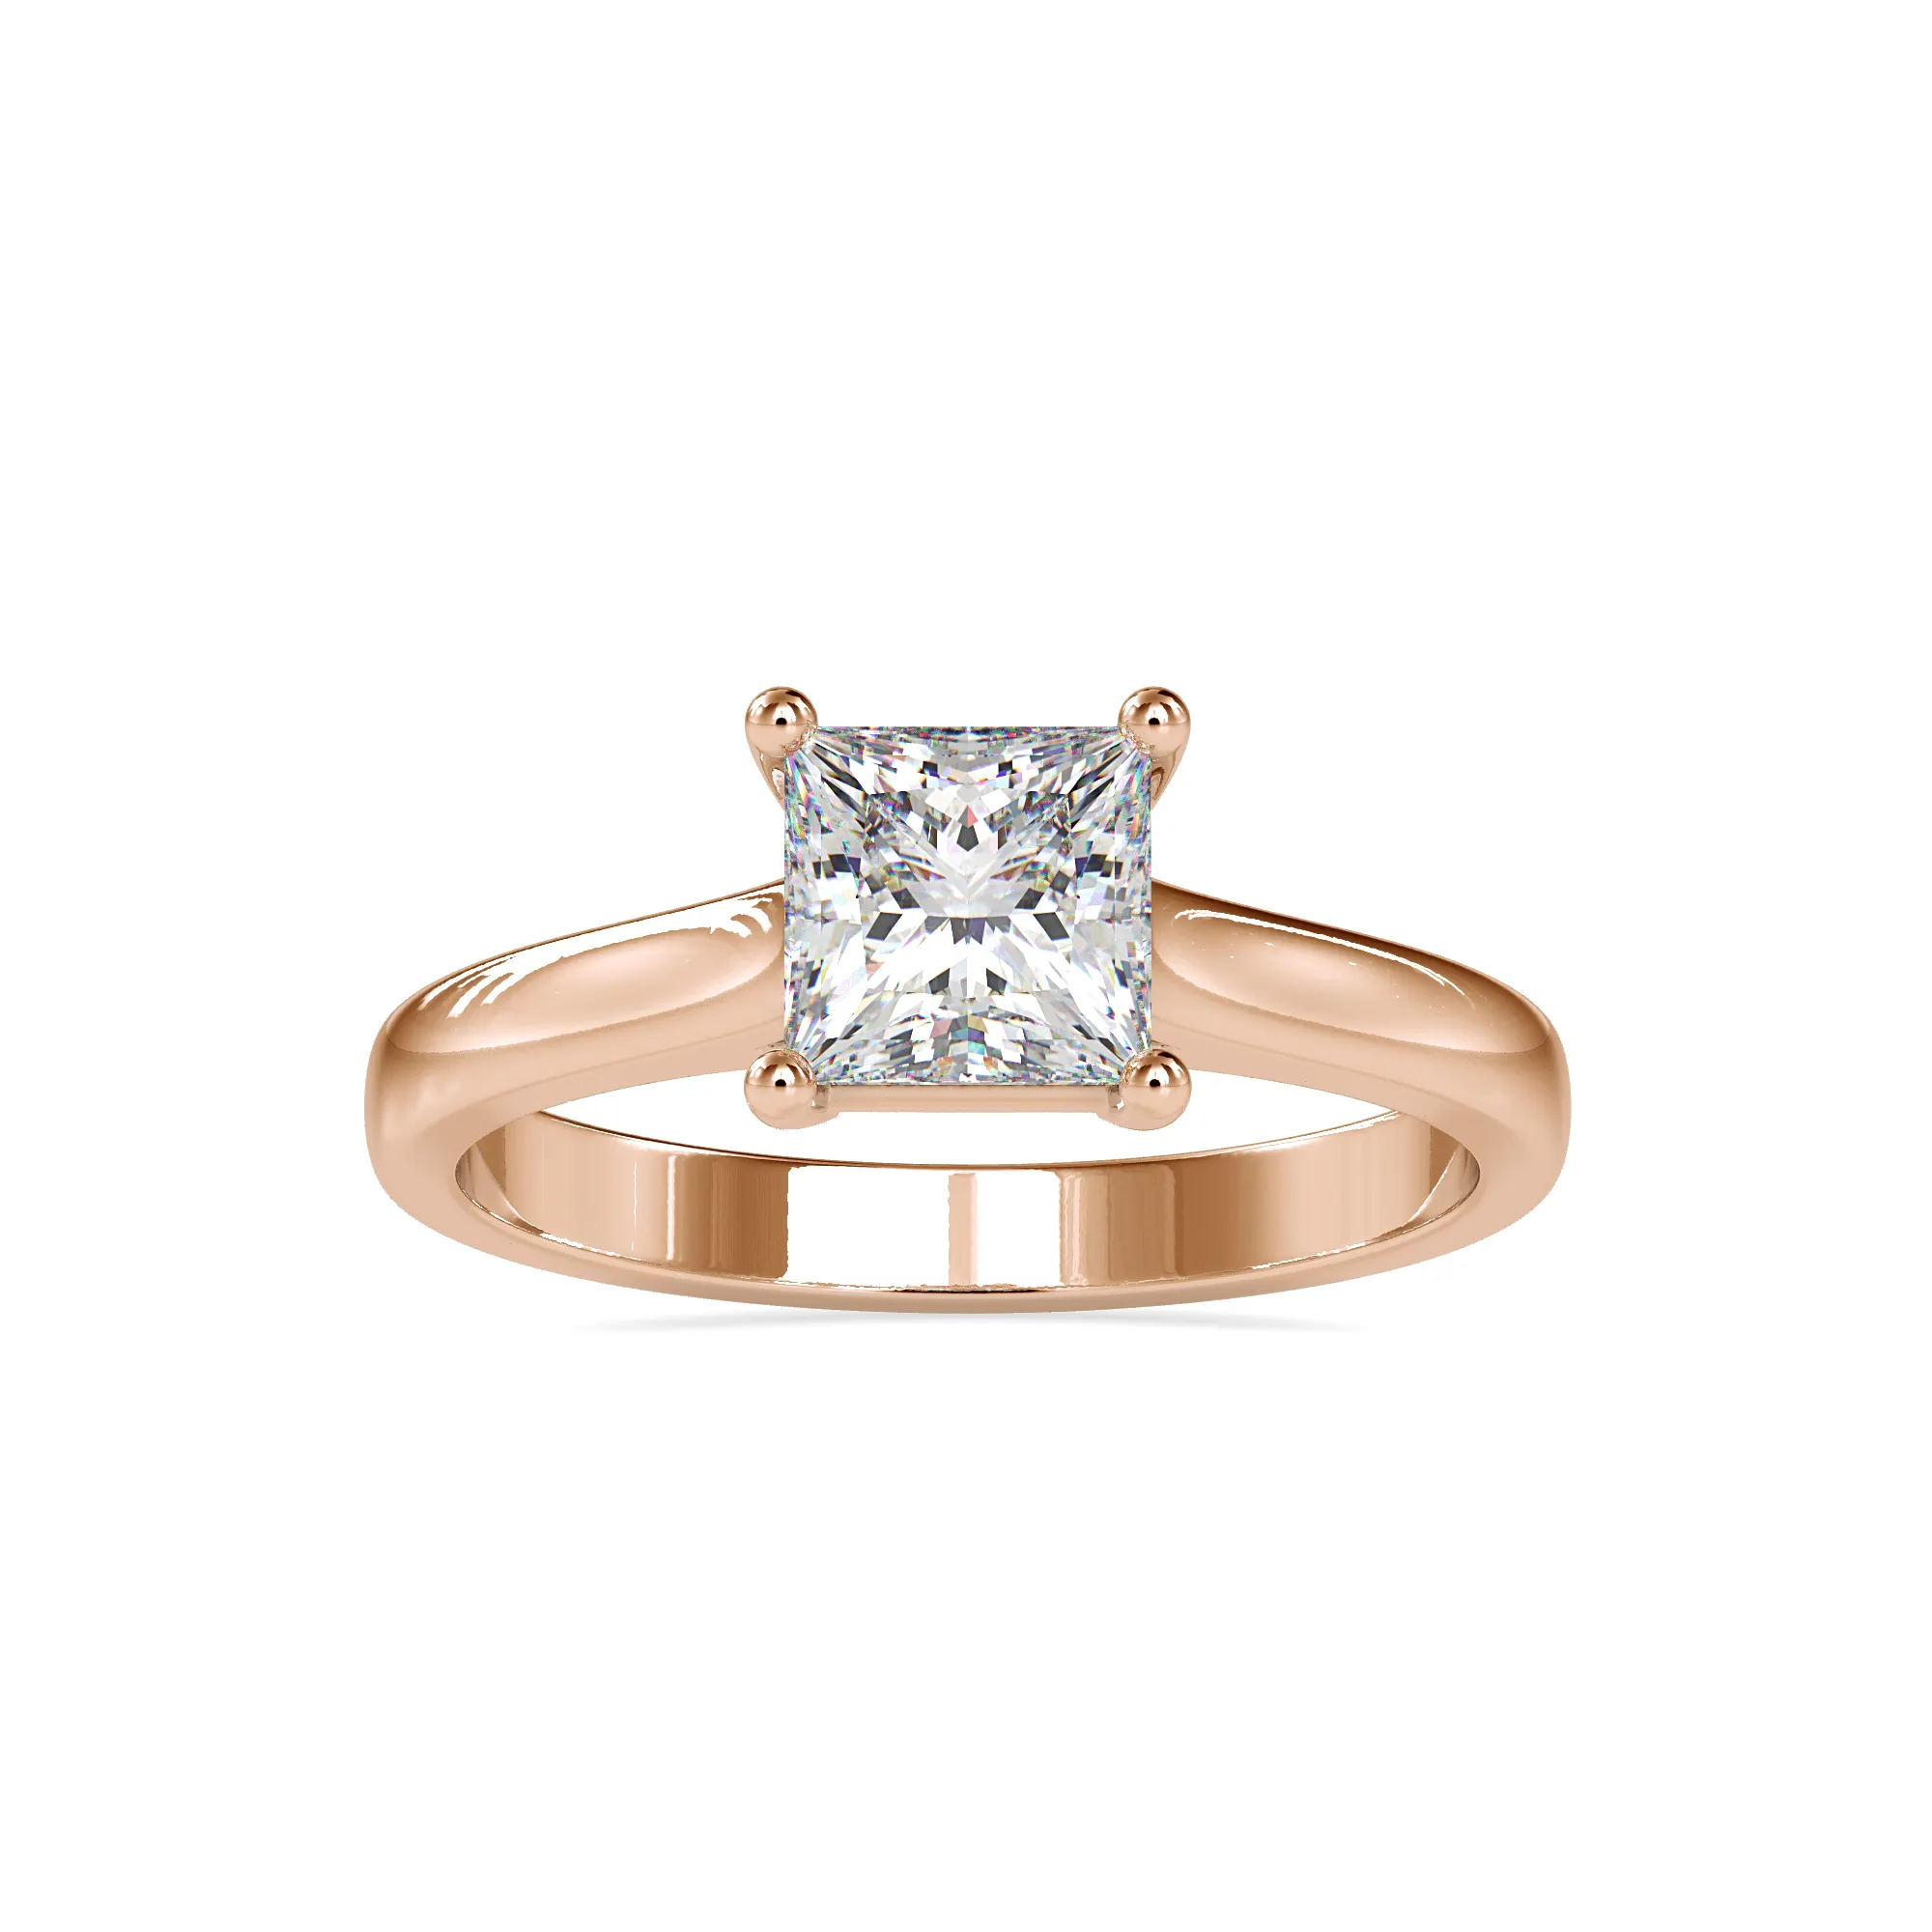 1.35CT Princess Cut Solitaire cincin berlian kuning putih mawar emas cincin berlian grosir buatan tangan produsen perhiasan CDJ IGI